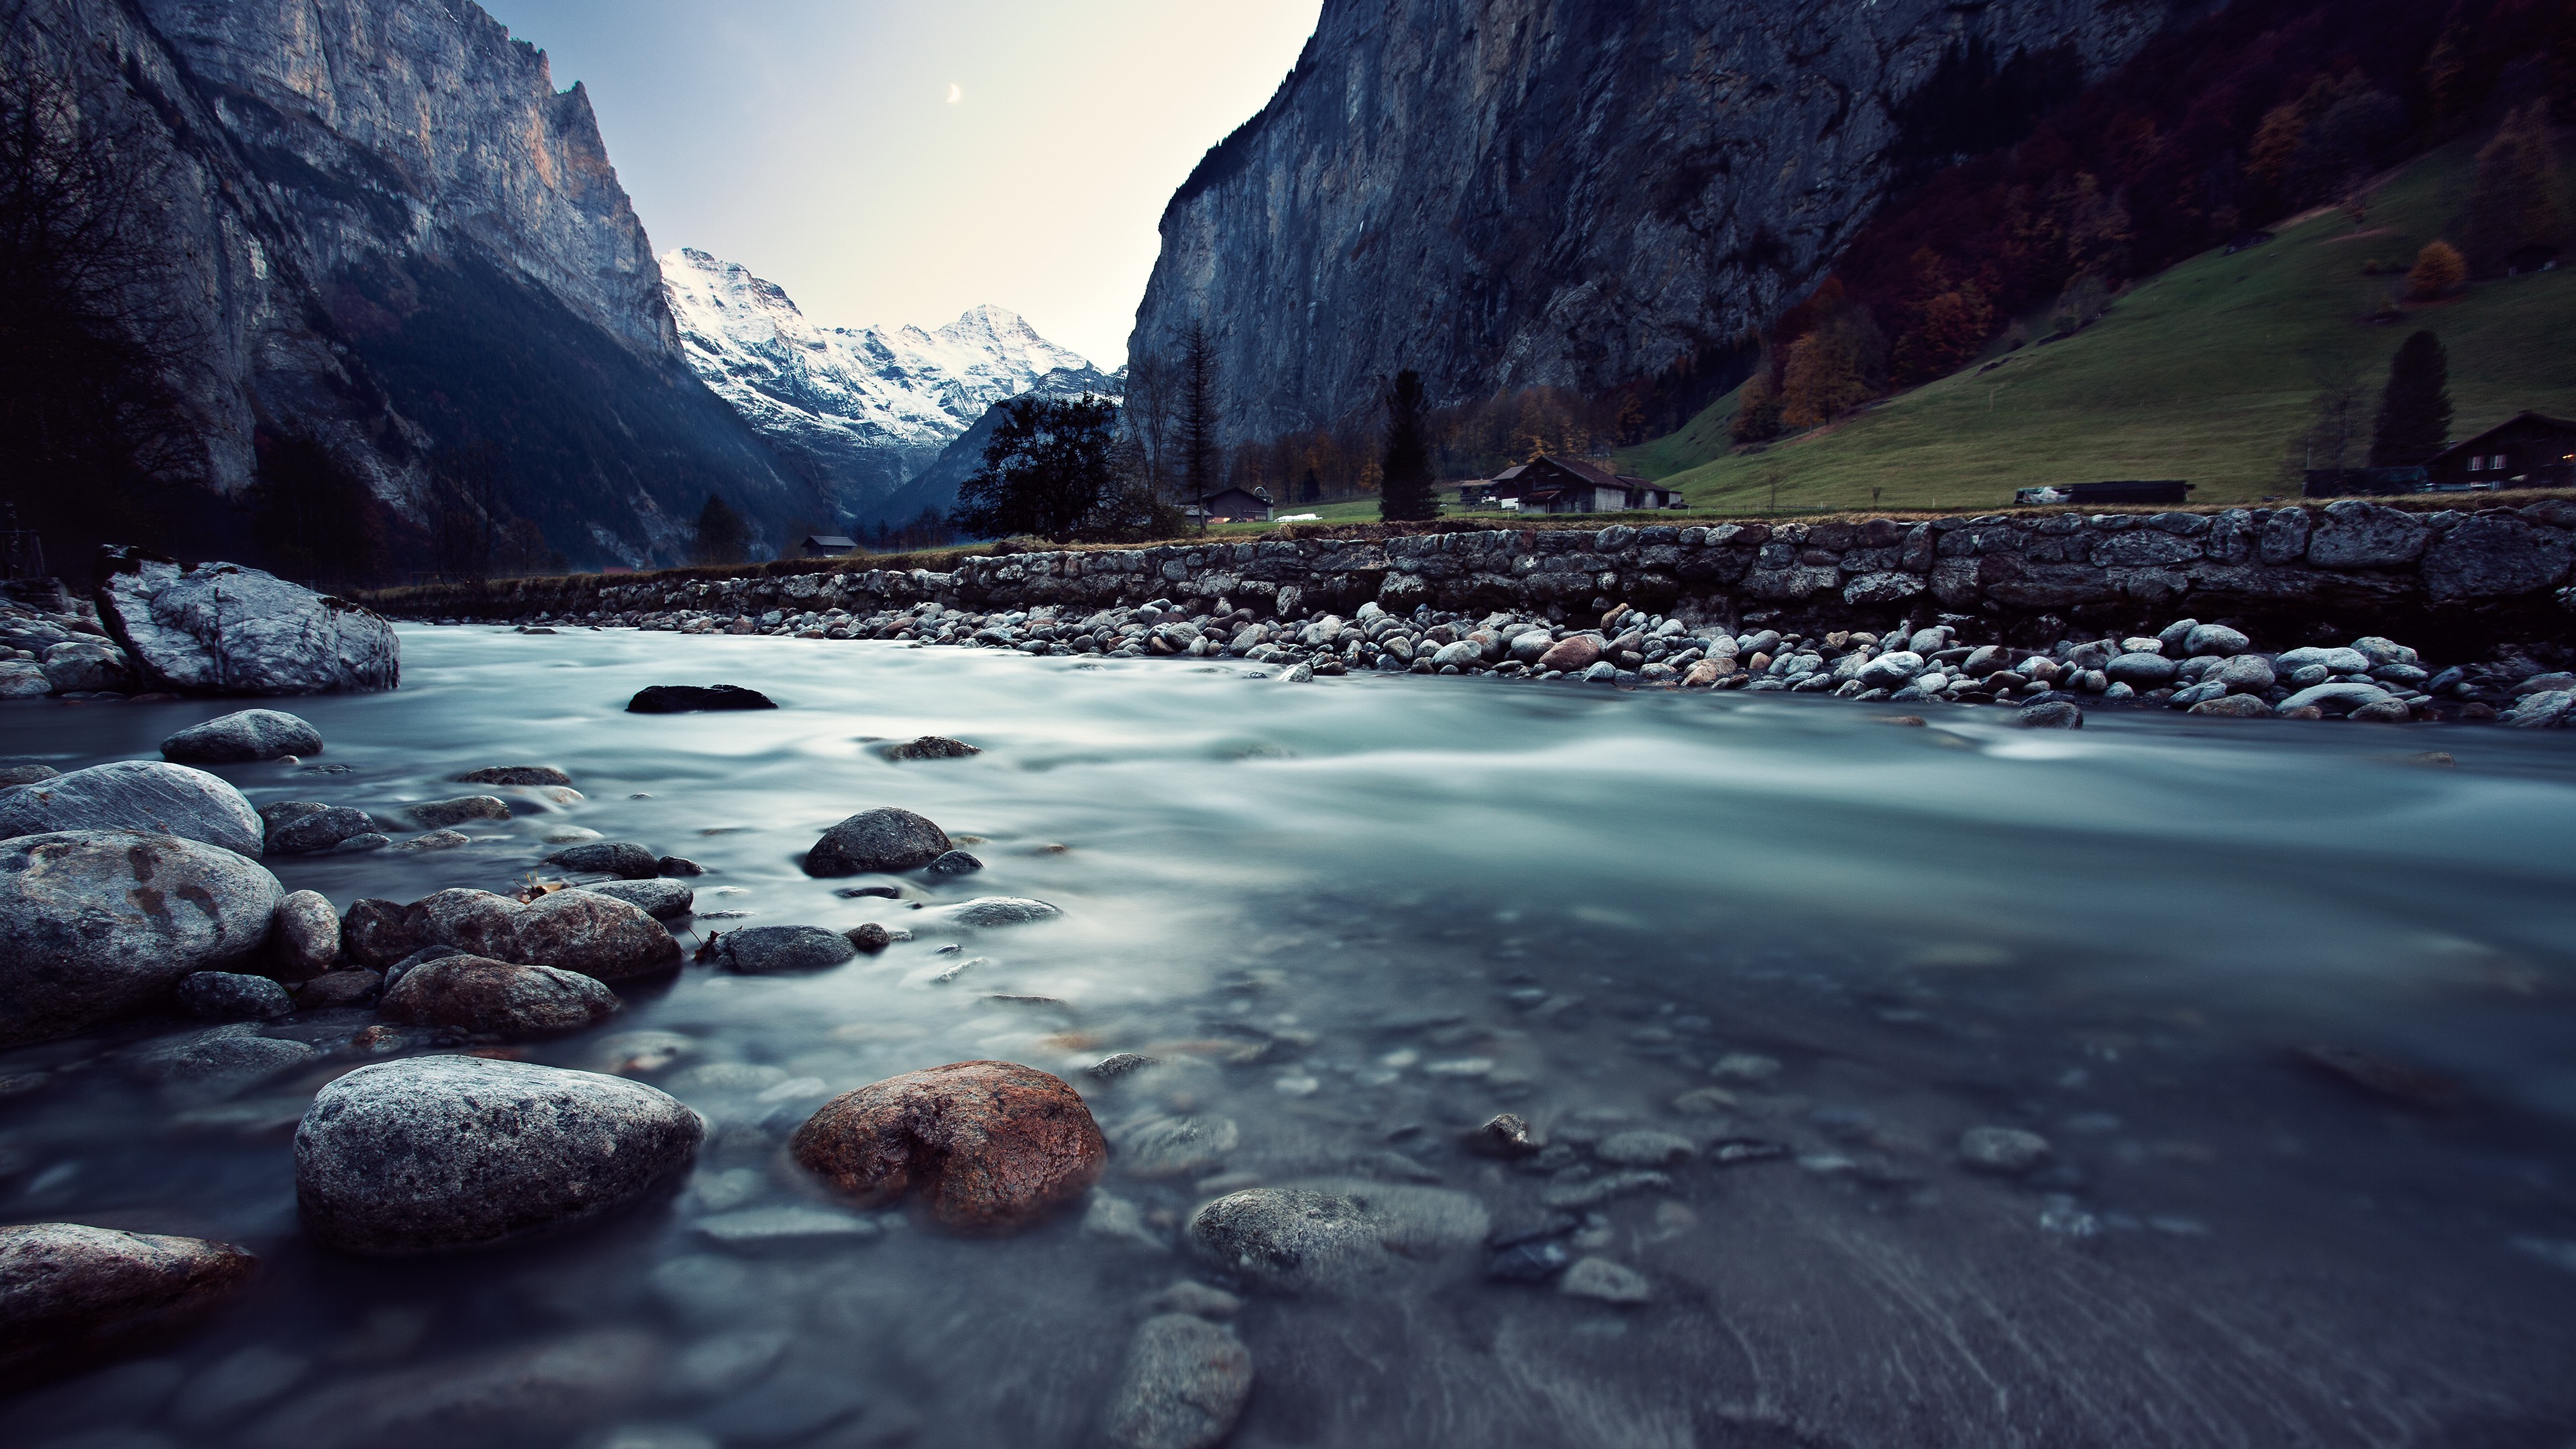 Скачать обои бесплатно Пейзаж, Природа, Река, Гора, Швейцария, Фотографии картинка на рабочий стол ПК